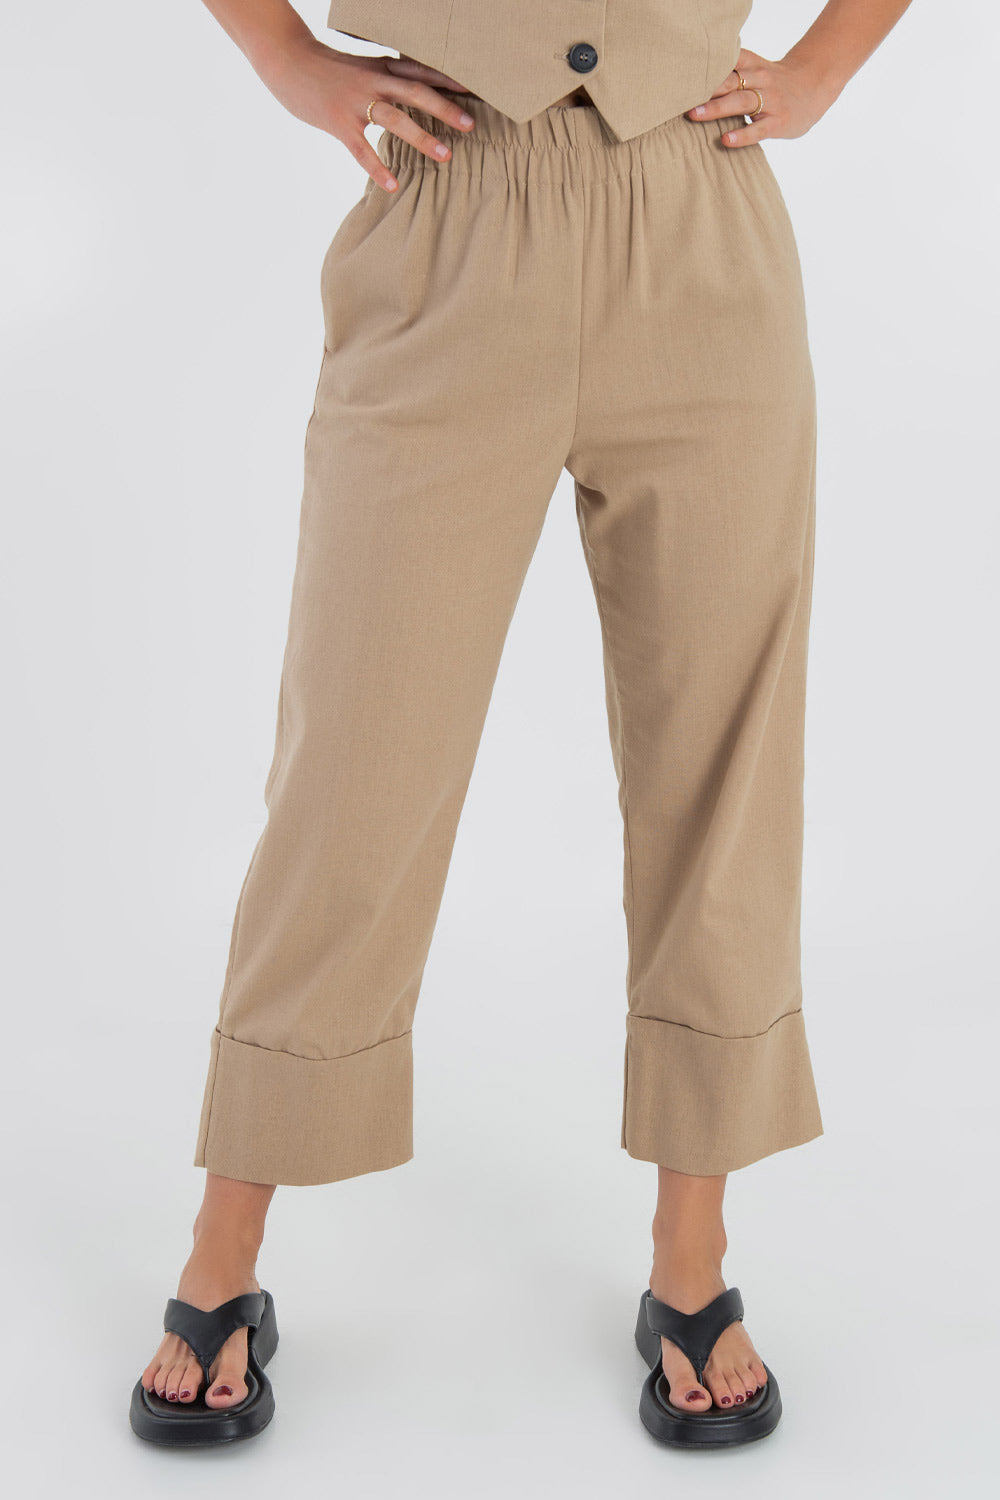 Pantalón de lino, fit culotte, cintura alta con pretina elástica y detalle de doblez en bajo.